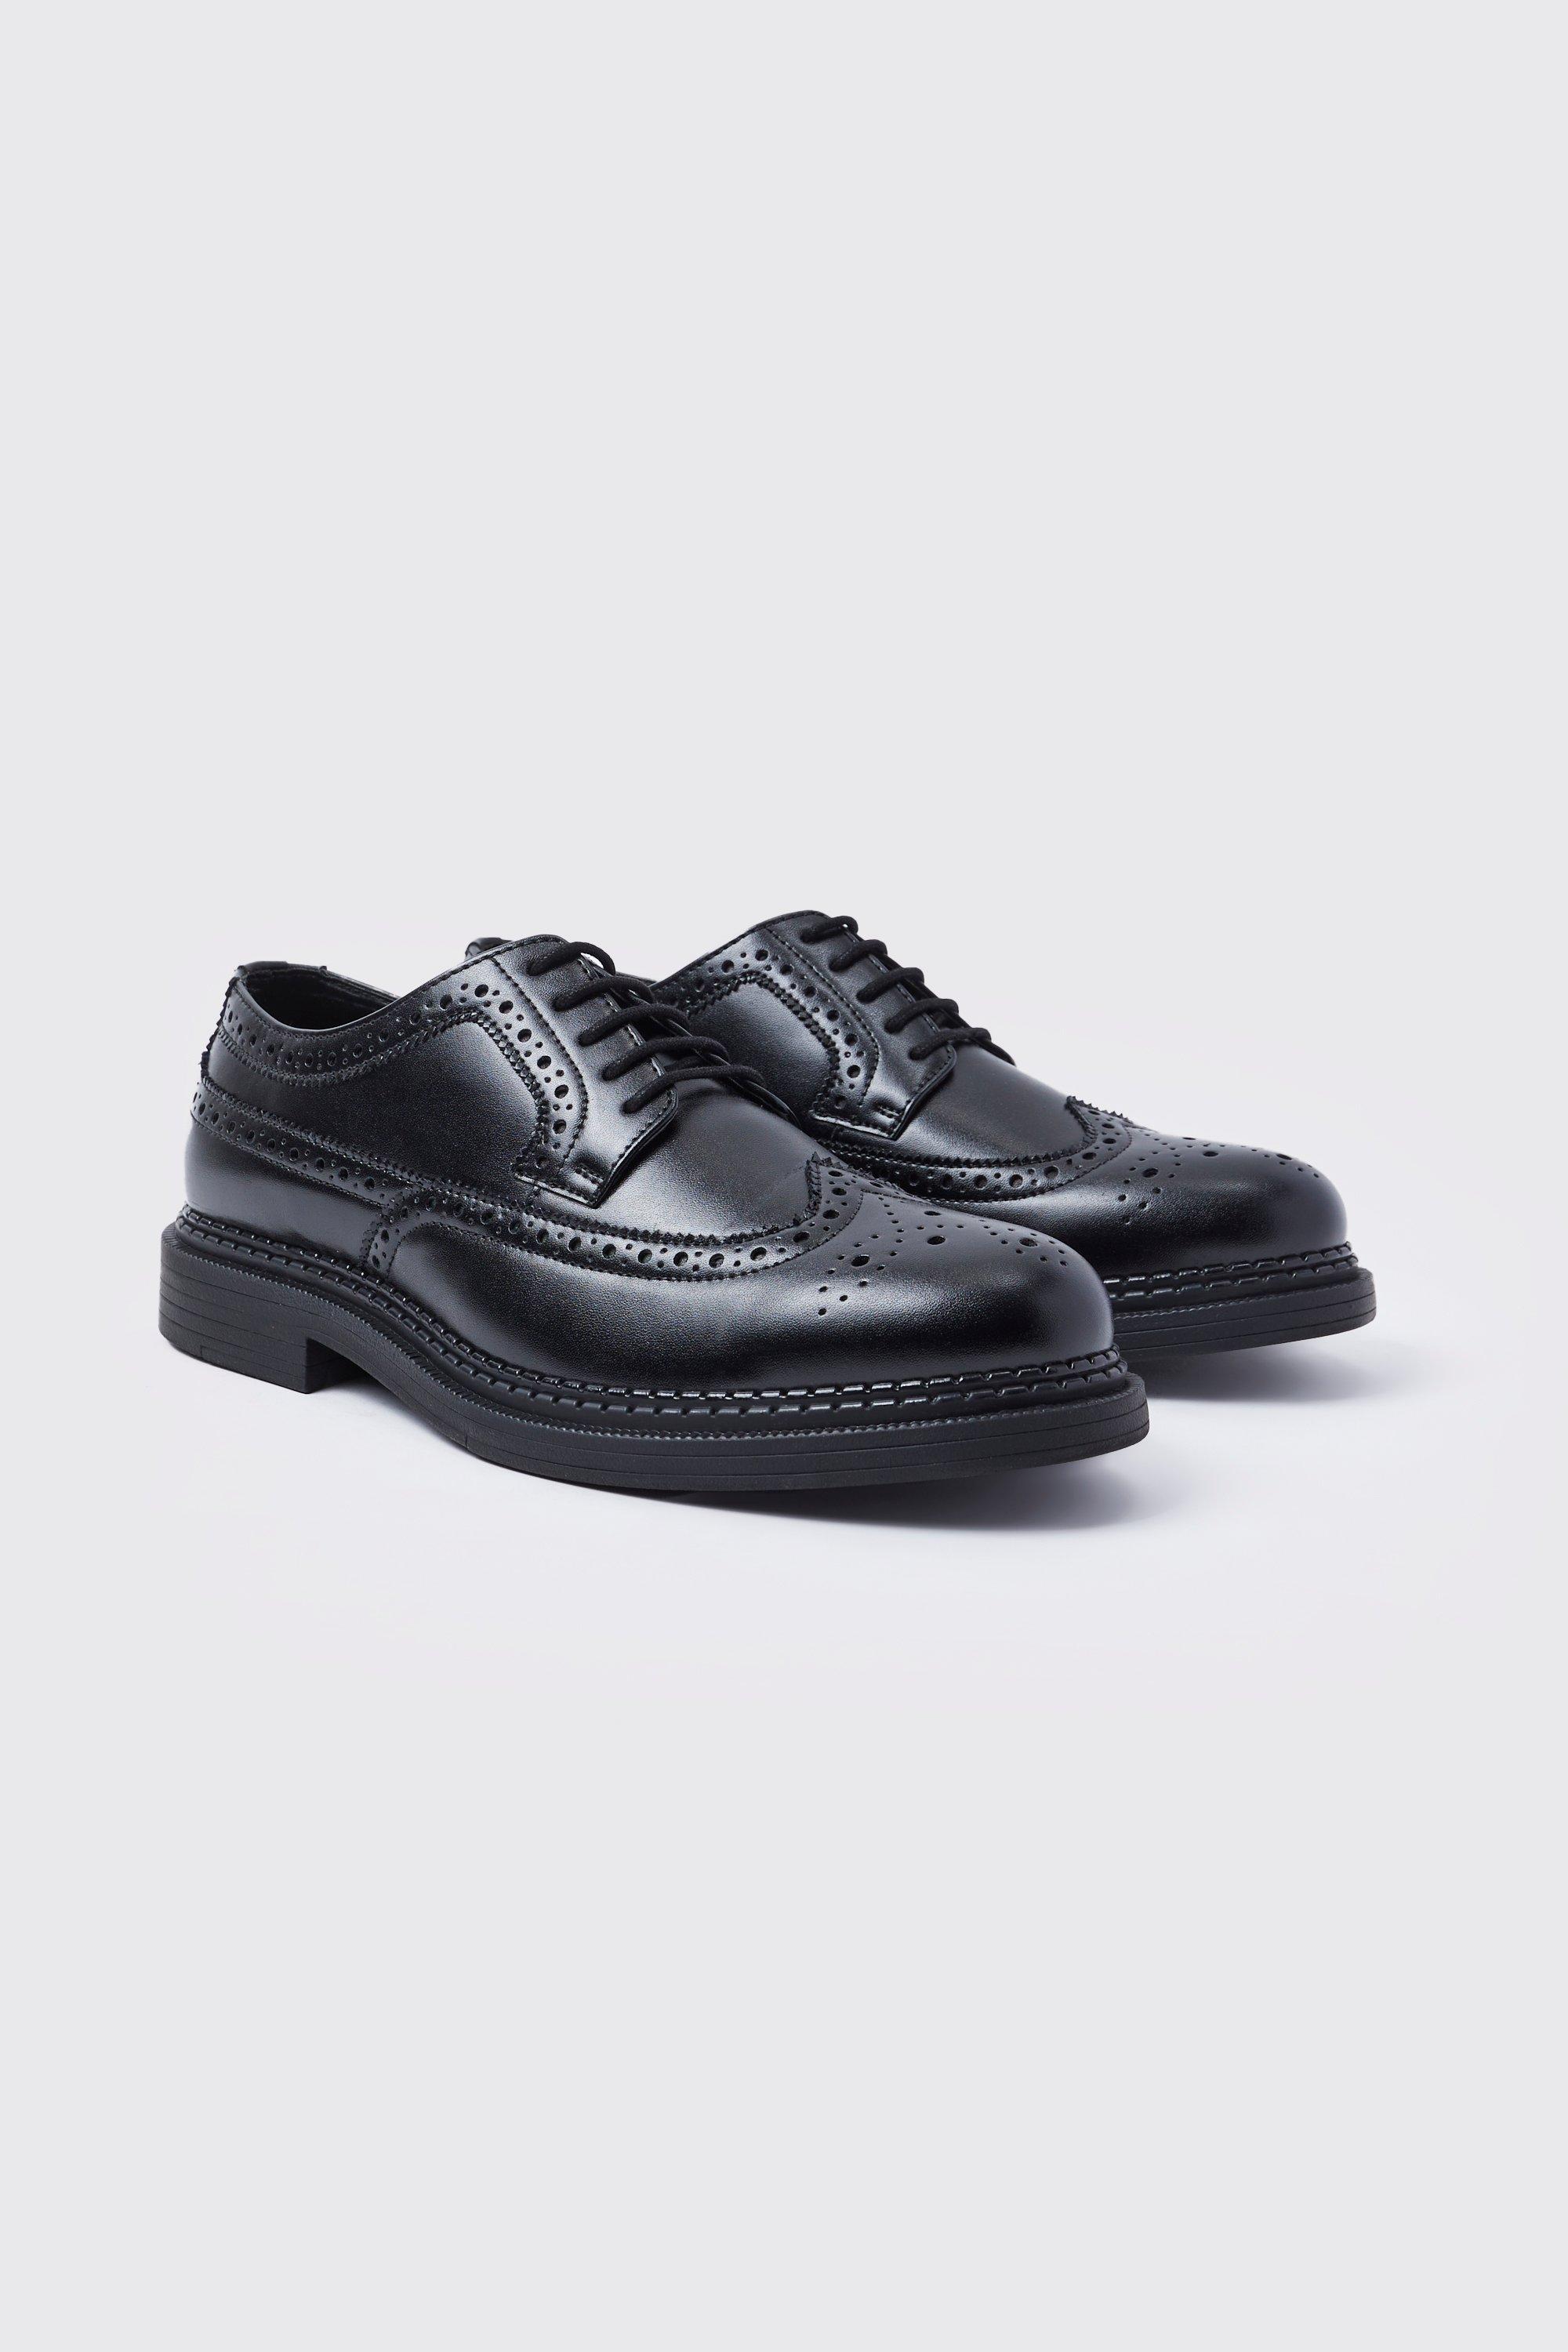 chaussures derbies classiques en simili homme - noir - 43, noir